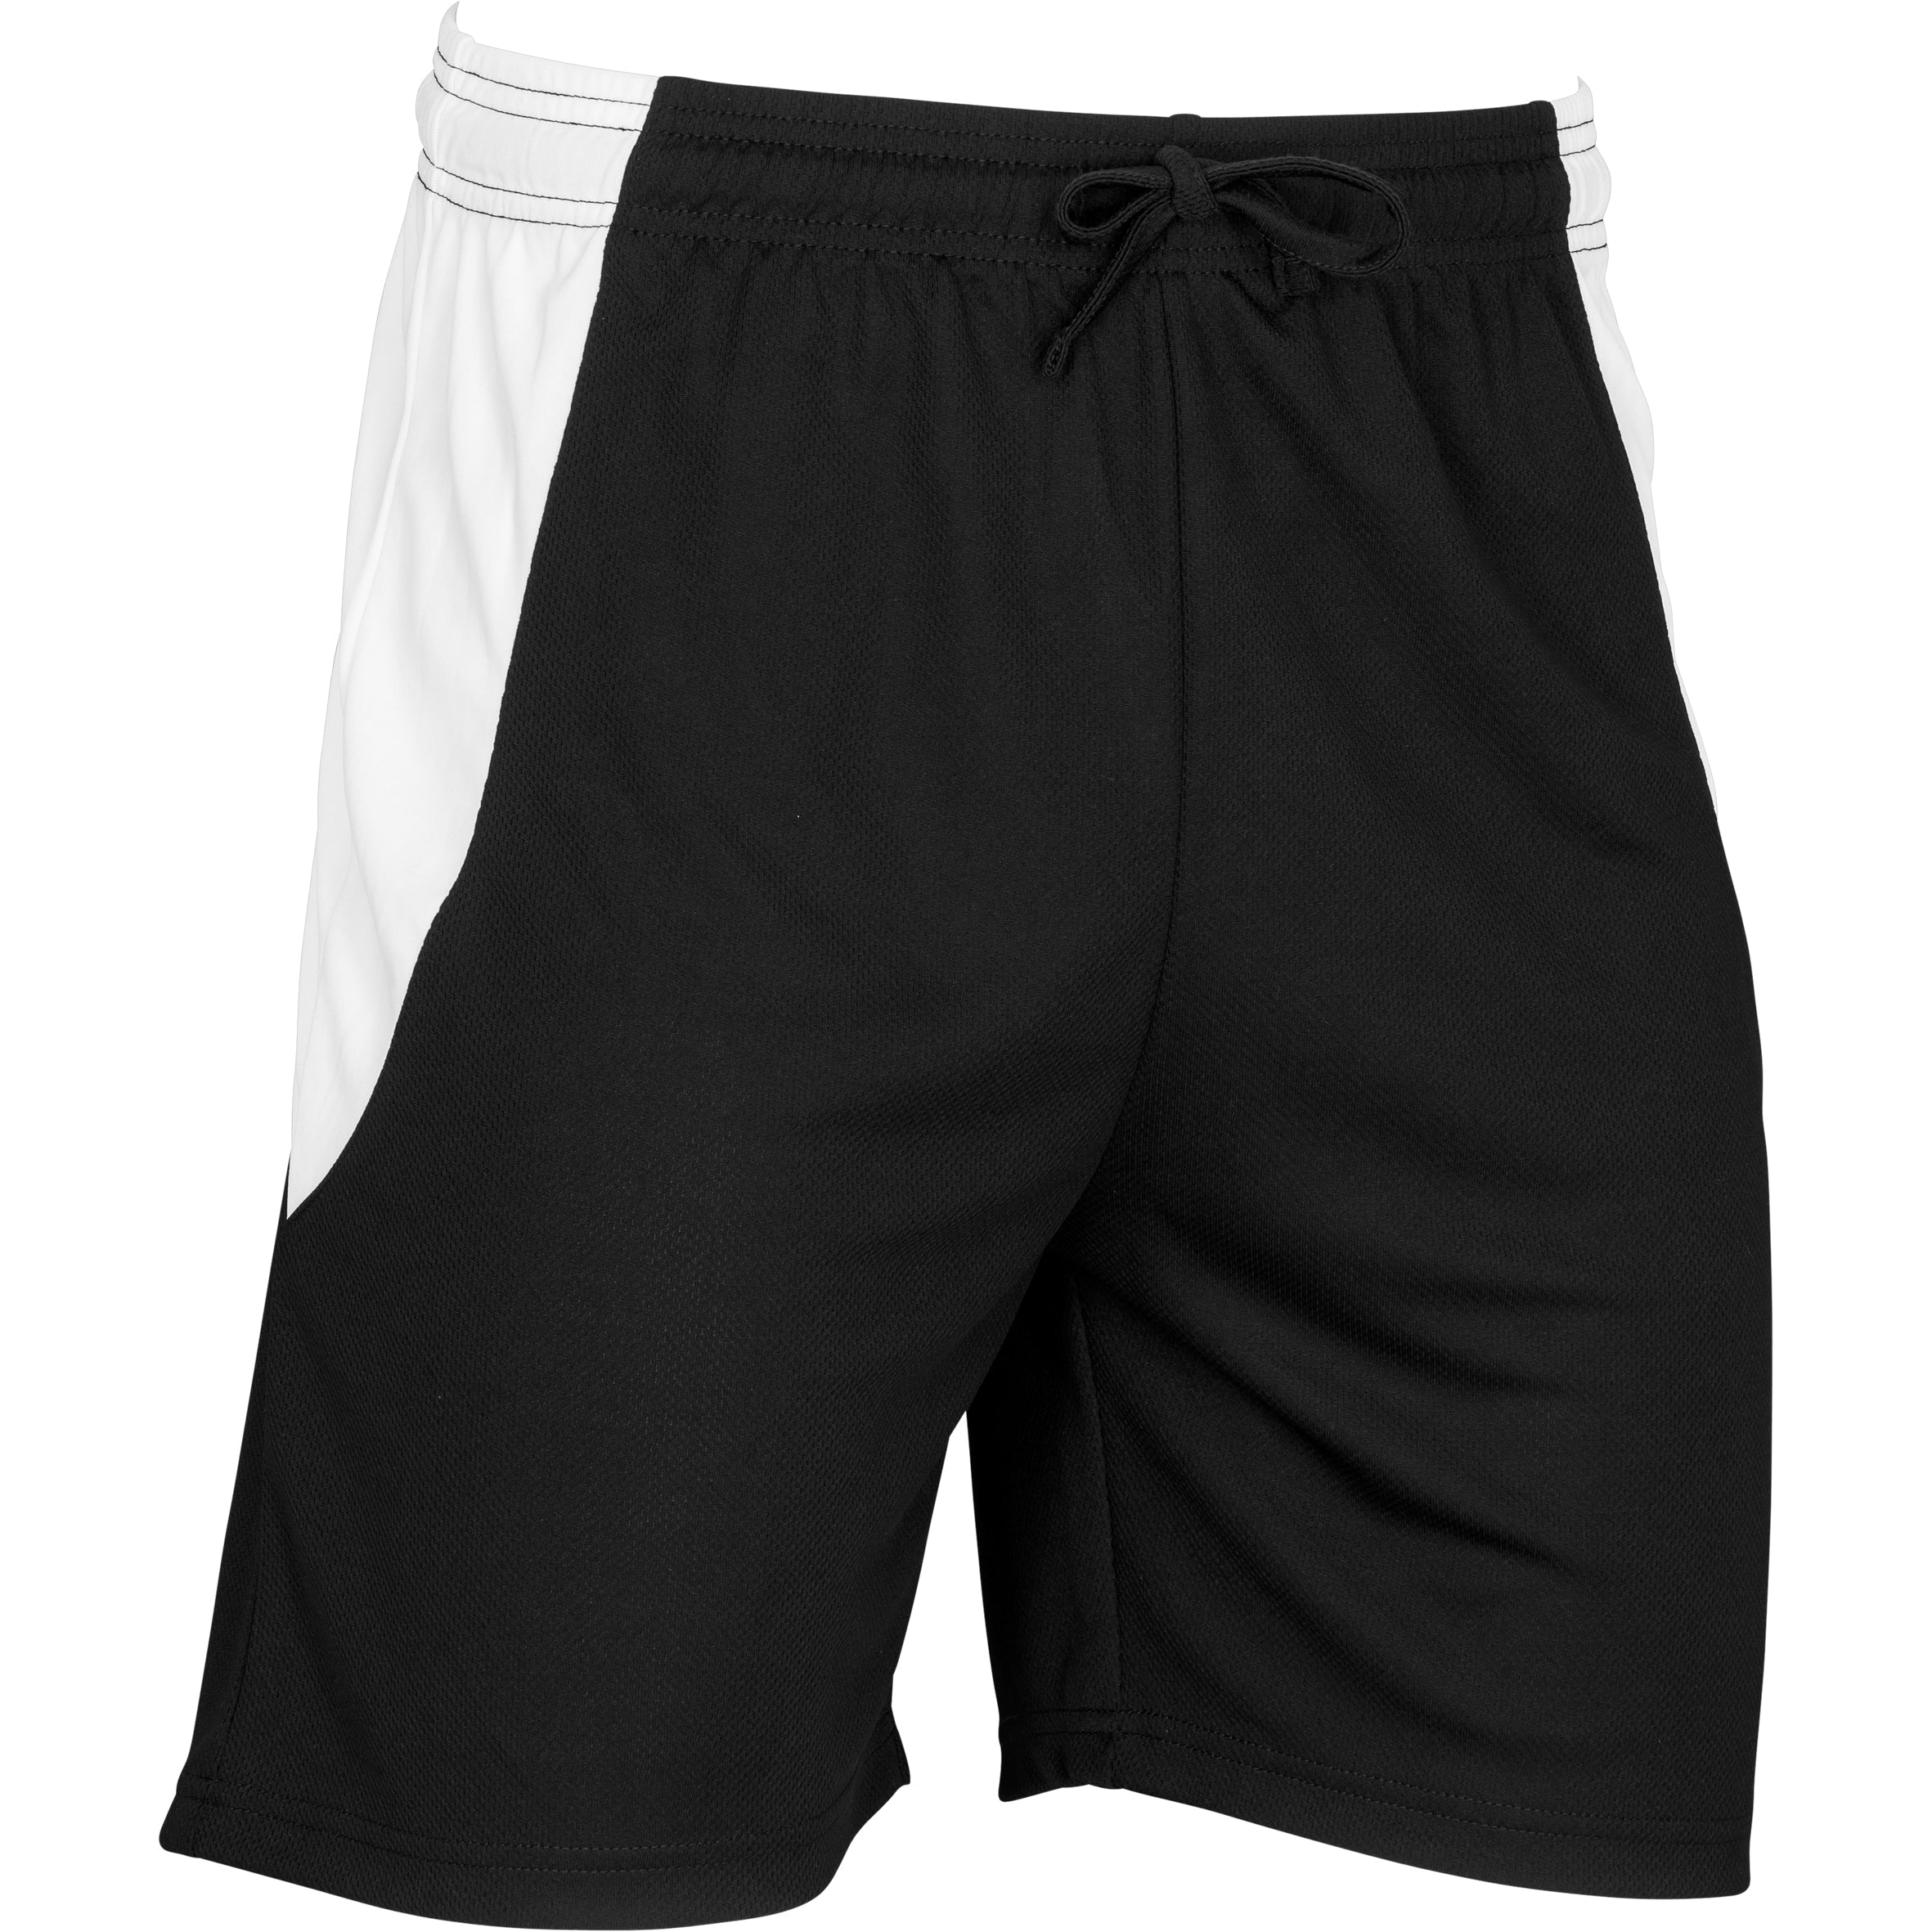 Unisex Championship Shorts - White L / Black / BL